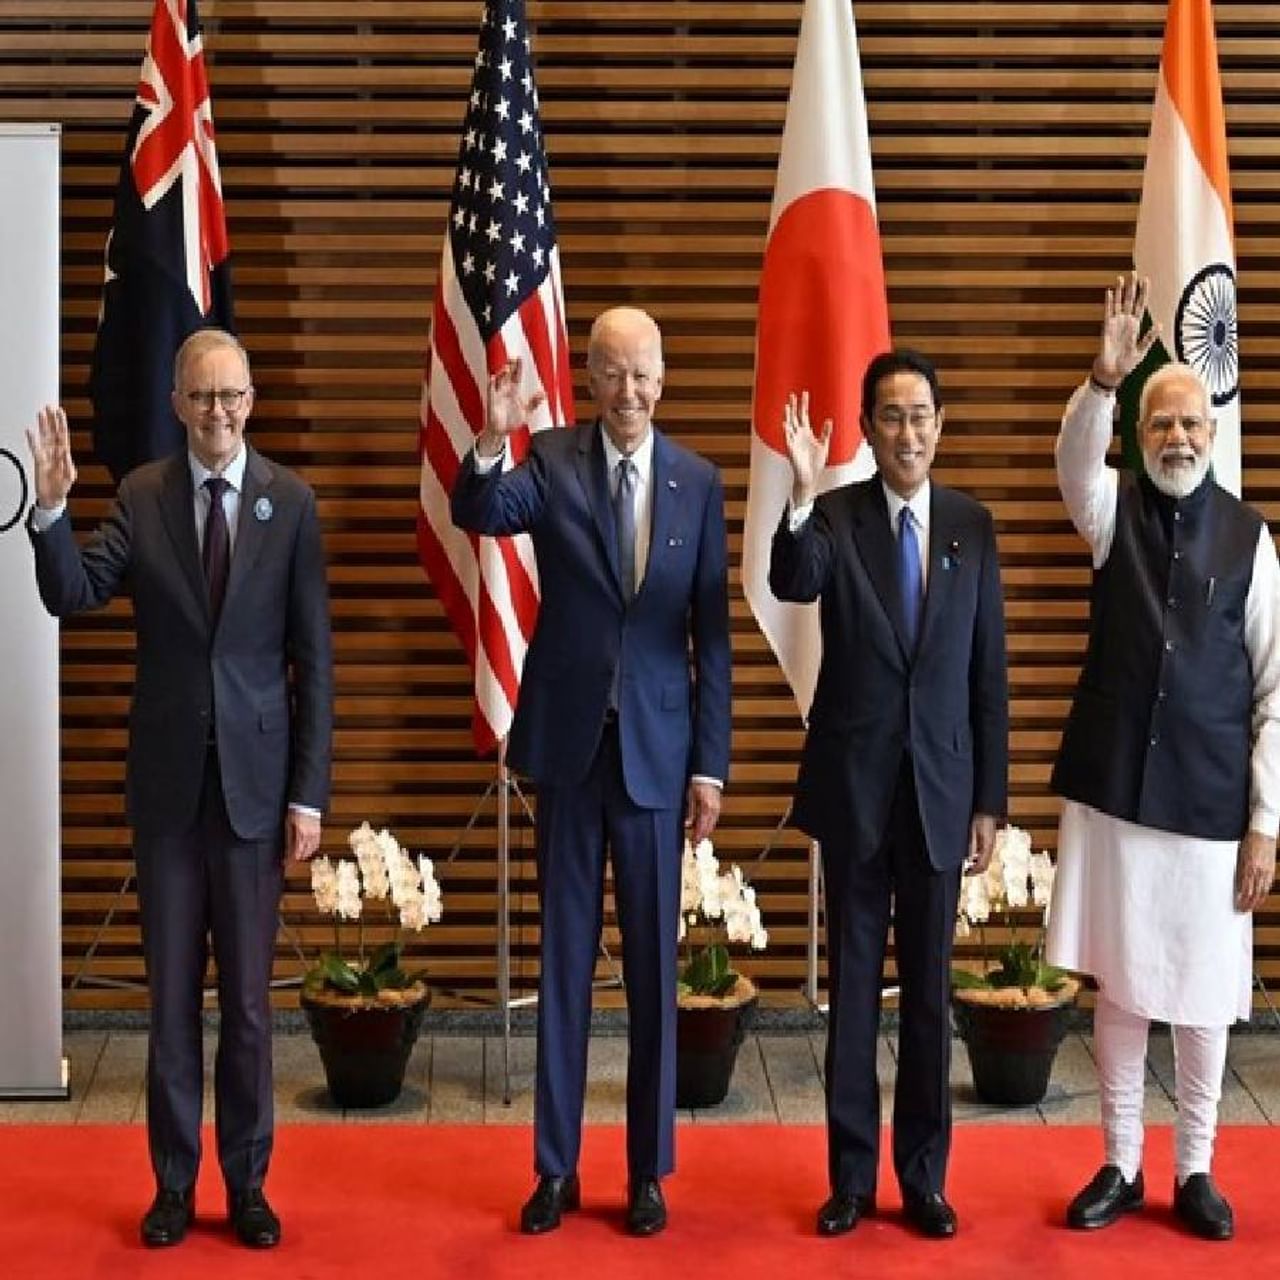 जपानची राजधानी टोकियो येथे अमेरिकेचे राष्ट्राध्यक्ष जो बिडेन आणि भारताचे पंतप्रधान नरेंद्र मोदी यांच्यात द्विपक्षीय चर्चा झाली. यावेळी पंतप्रधान मोदी म्हणाले - जागतिक शांततेसाठी भारत-अमेरिका मैत्री महत्त्वाची आहे. आमचा समान हितावरील विश्वास दृढ झाला आहे. आमची मैत्री मानव कल्याणासाठी वचनबद्ध आहे.